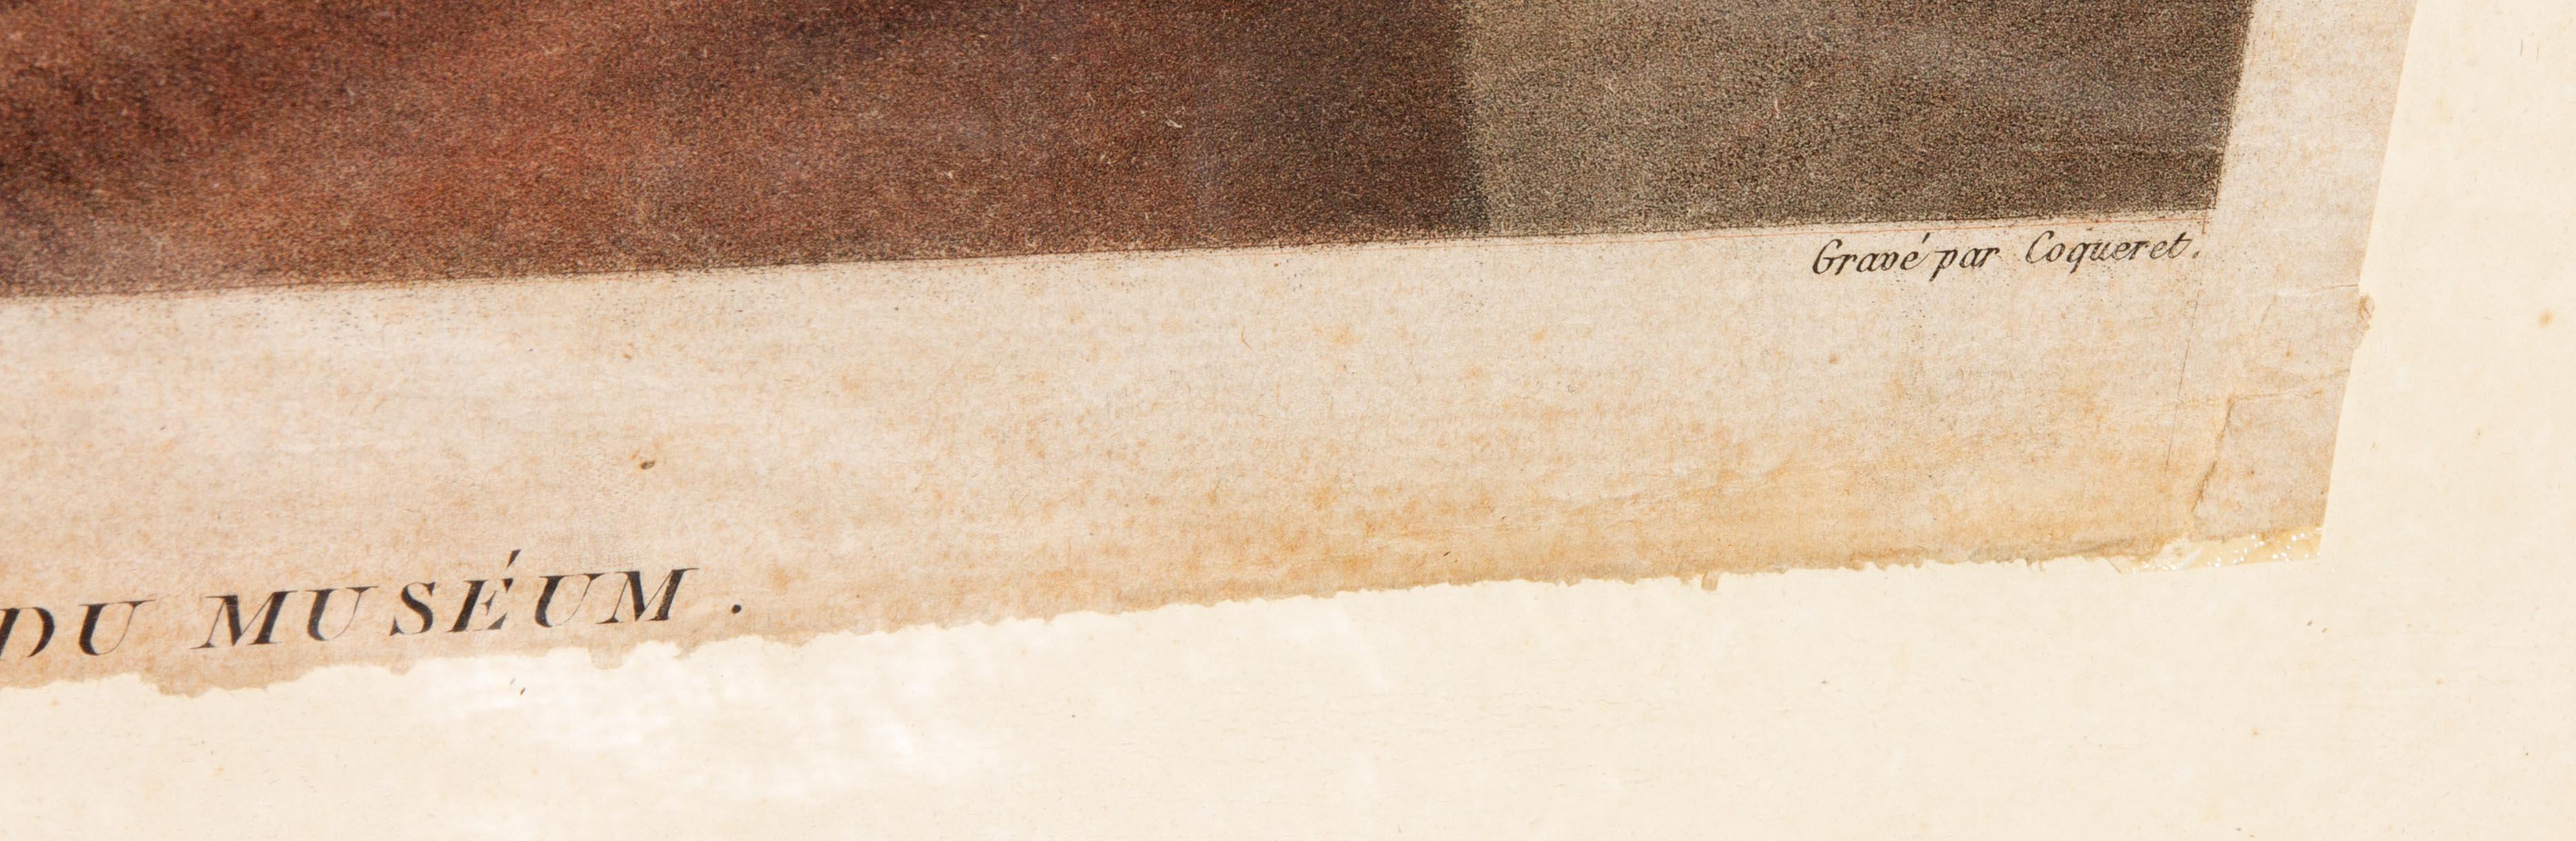 Impression du début du 19e siècle sur papier vergé. Deux apôtres d'après Raphael (Raffaello Sanzio da Urbino). Bonne couleur. Quelques rides subtiles sur le papier. Encadré. 